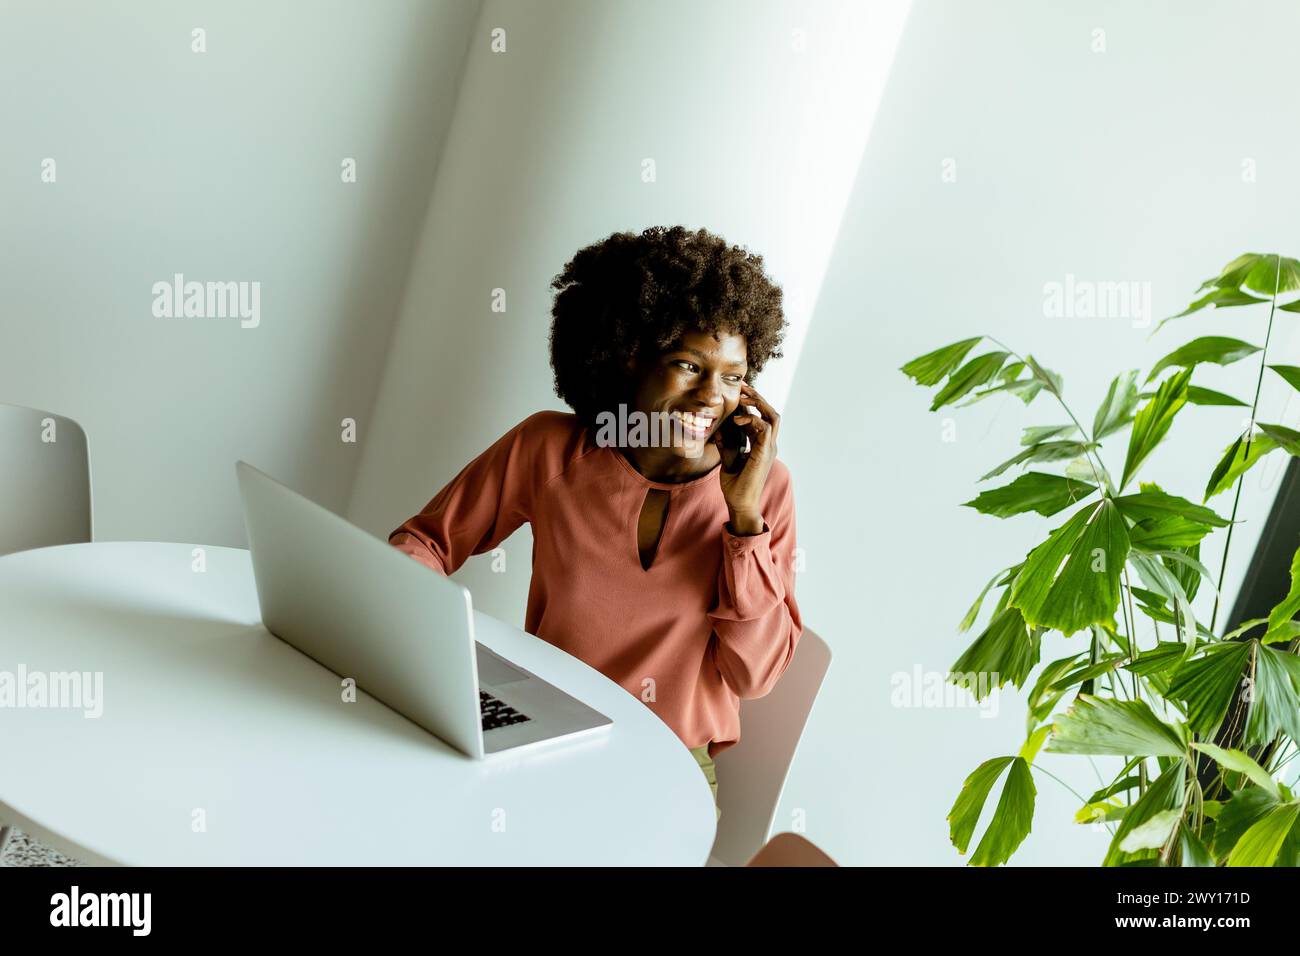 Eine fröhliche Frau spricht am Telefon an einem Café-Tisch mit einem Laptop und einer lebendigen Pflanze neben ihr. Stockfoto